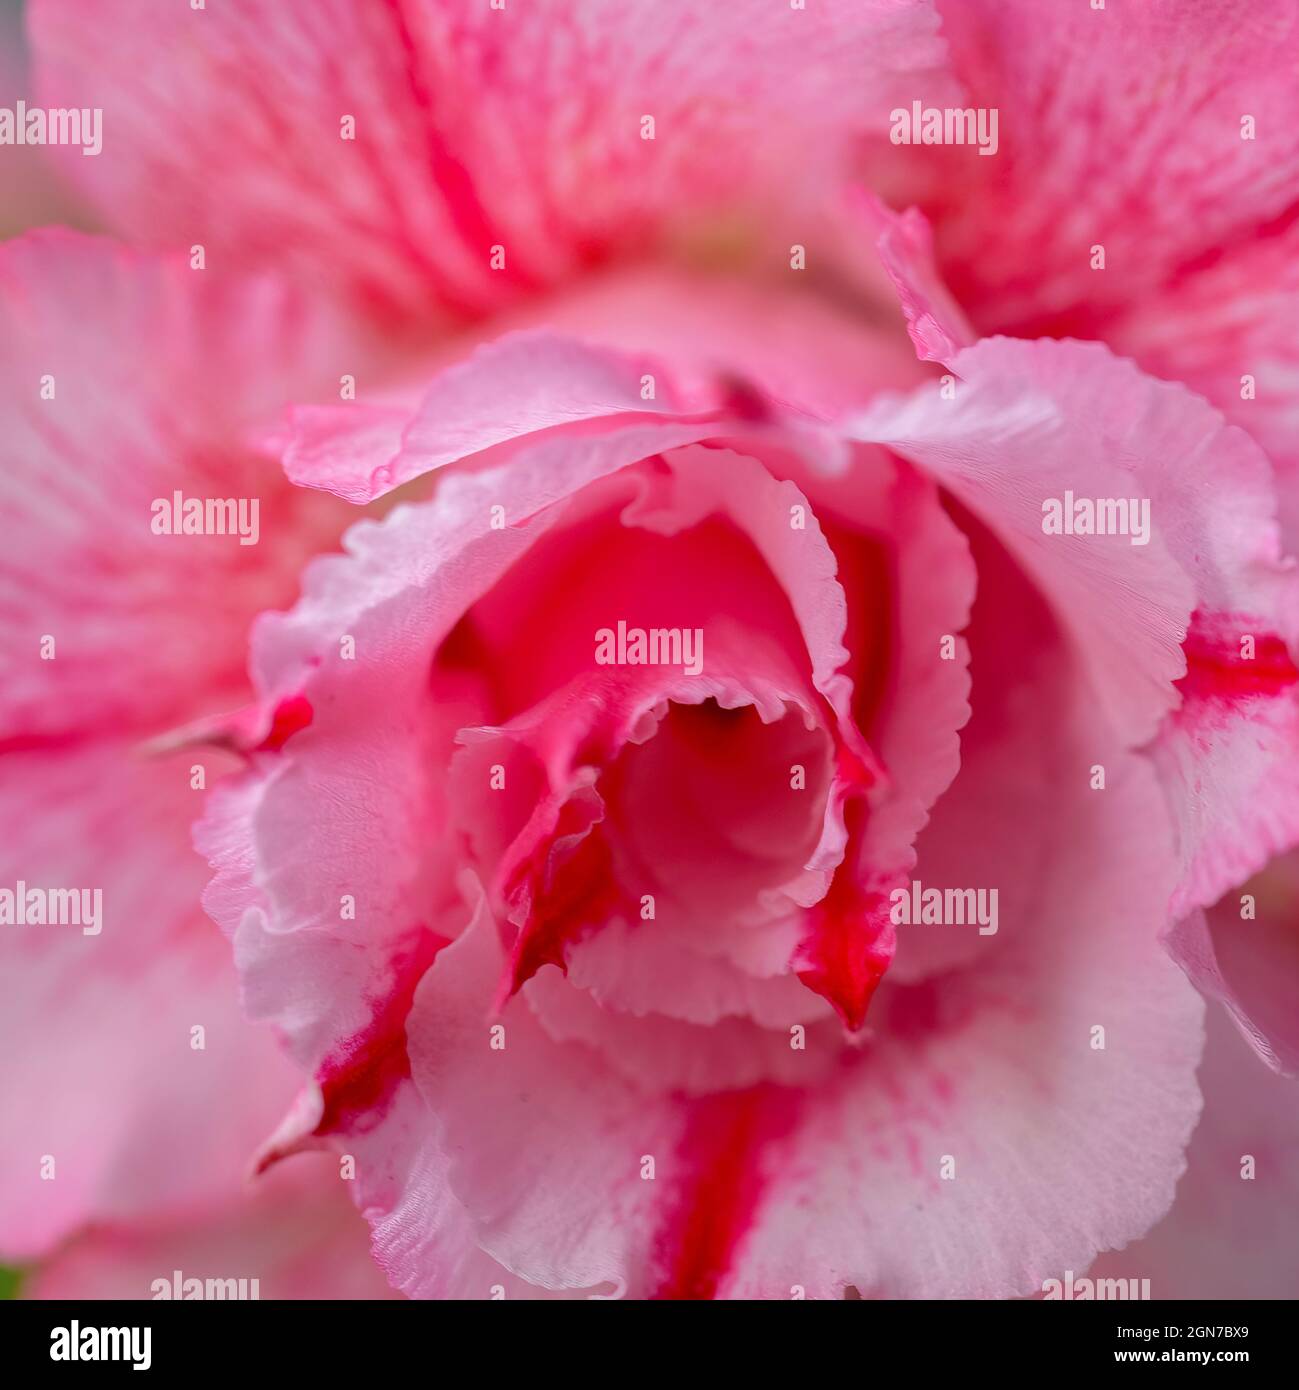 Belle fleur de rose délicate gros plan, macro.Fleurs parfumées rose pâle dans le jardin.Fond rose pastel, pétales de fleurs rouges. Banque D'Images